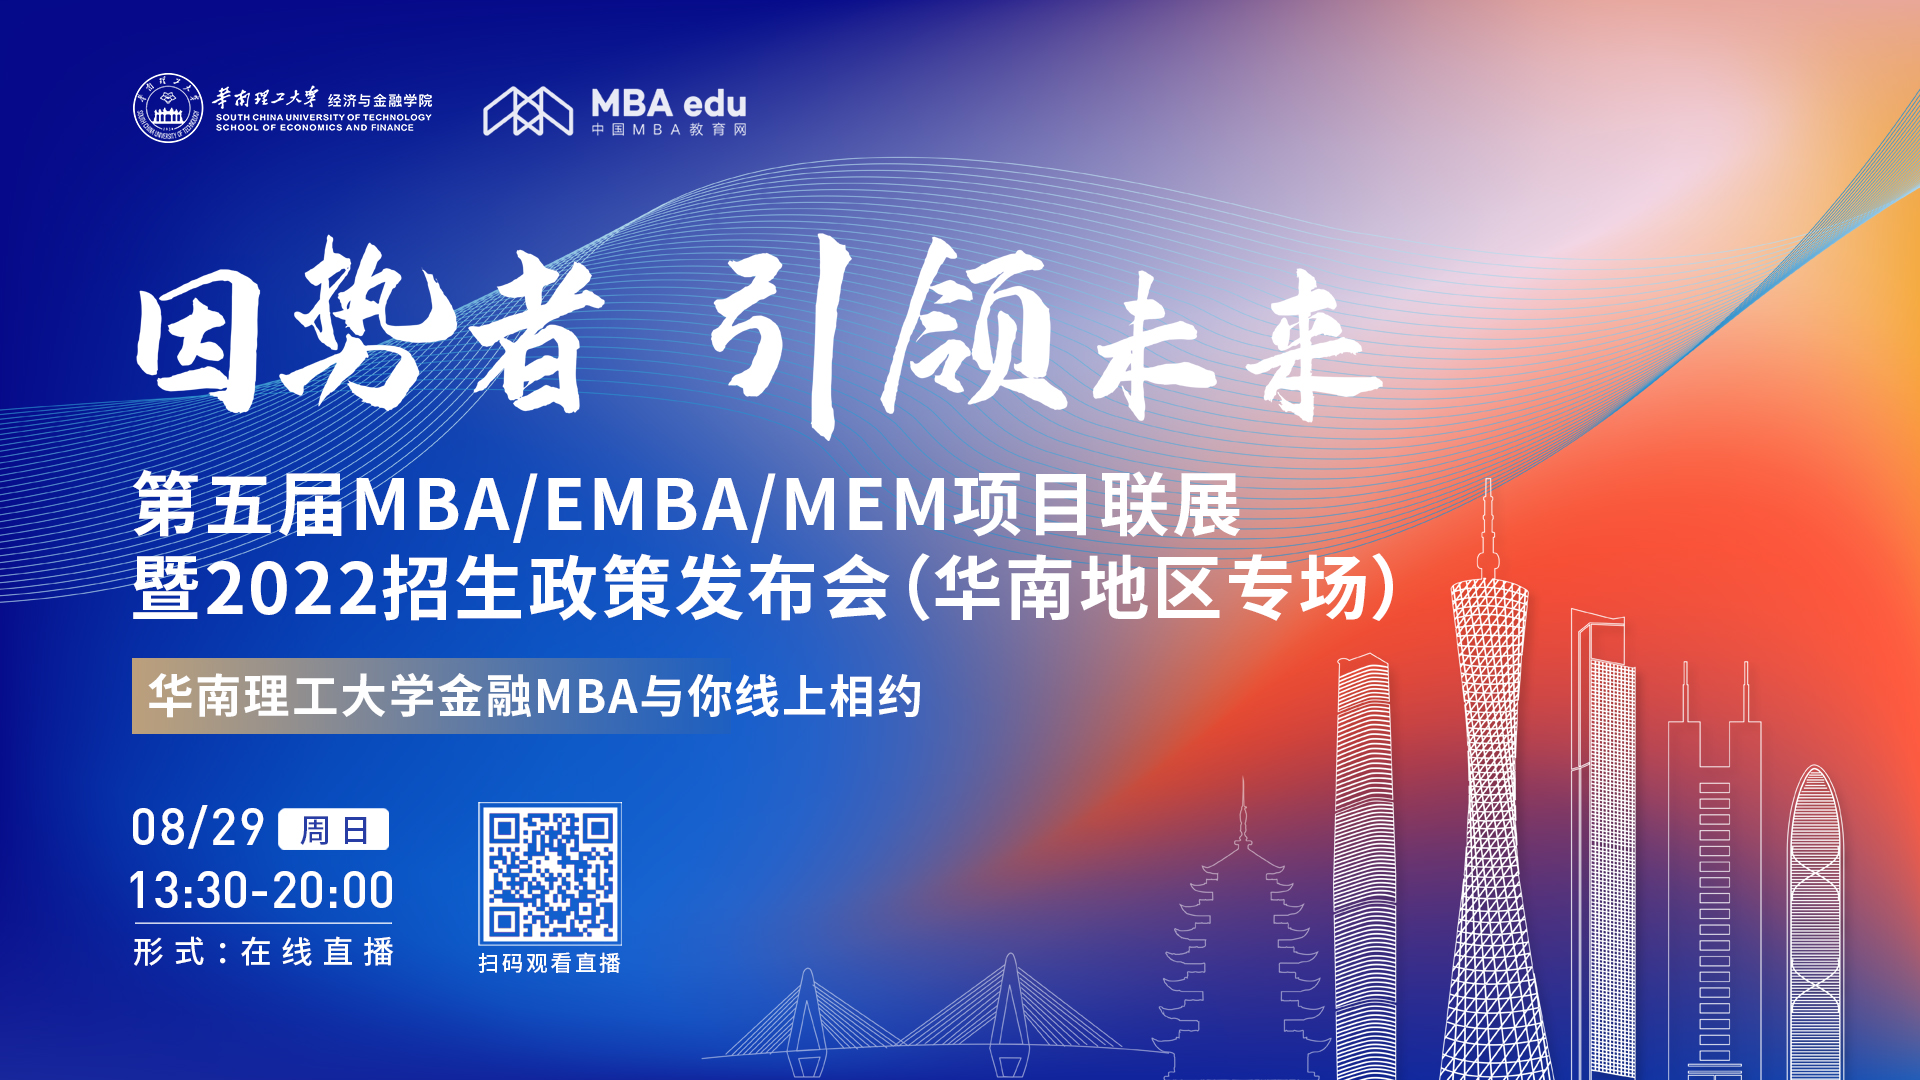 【8.29】华南理工大学金融MBA项目邀您在线收看第五届MBA/EMBA/MEM项目联展暨2022招生政策发布会（华南地区专场）